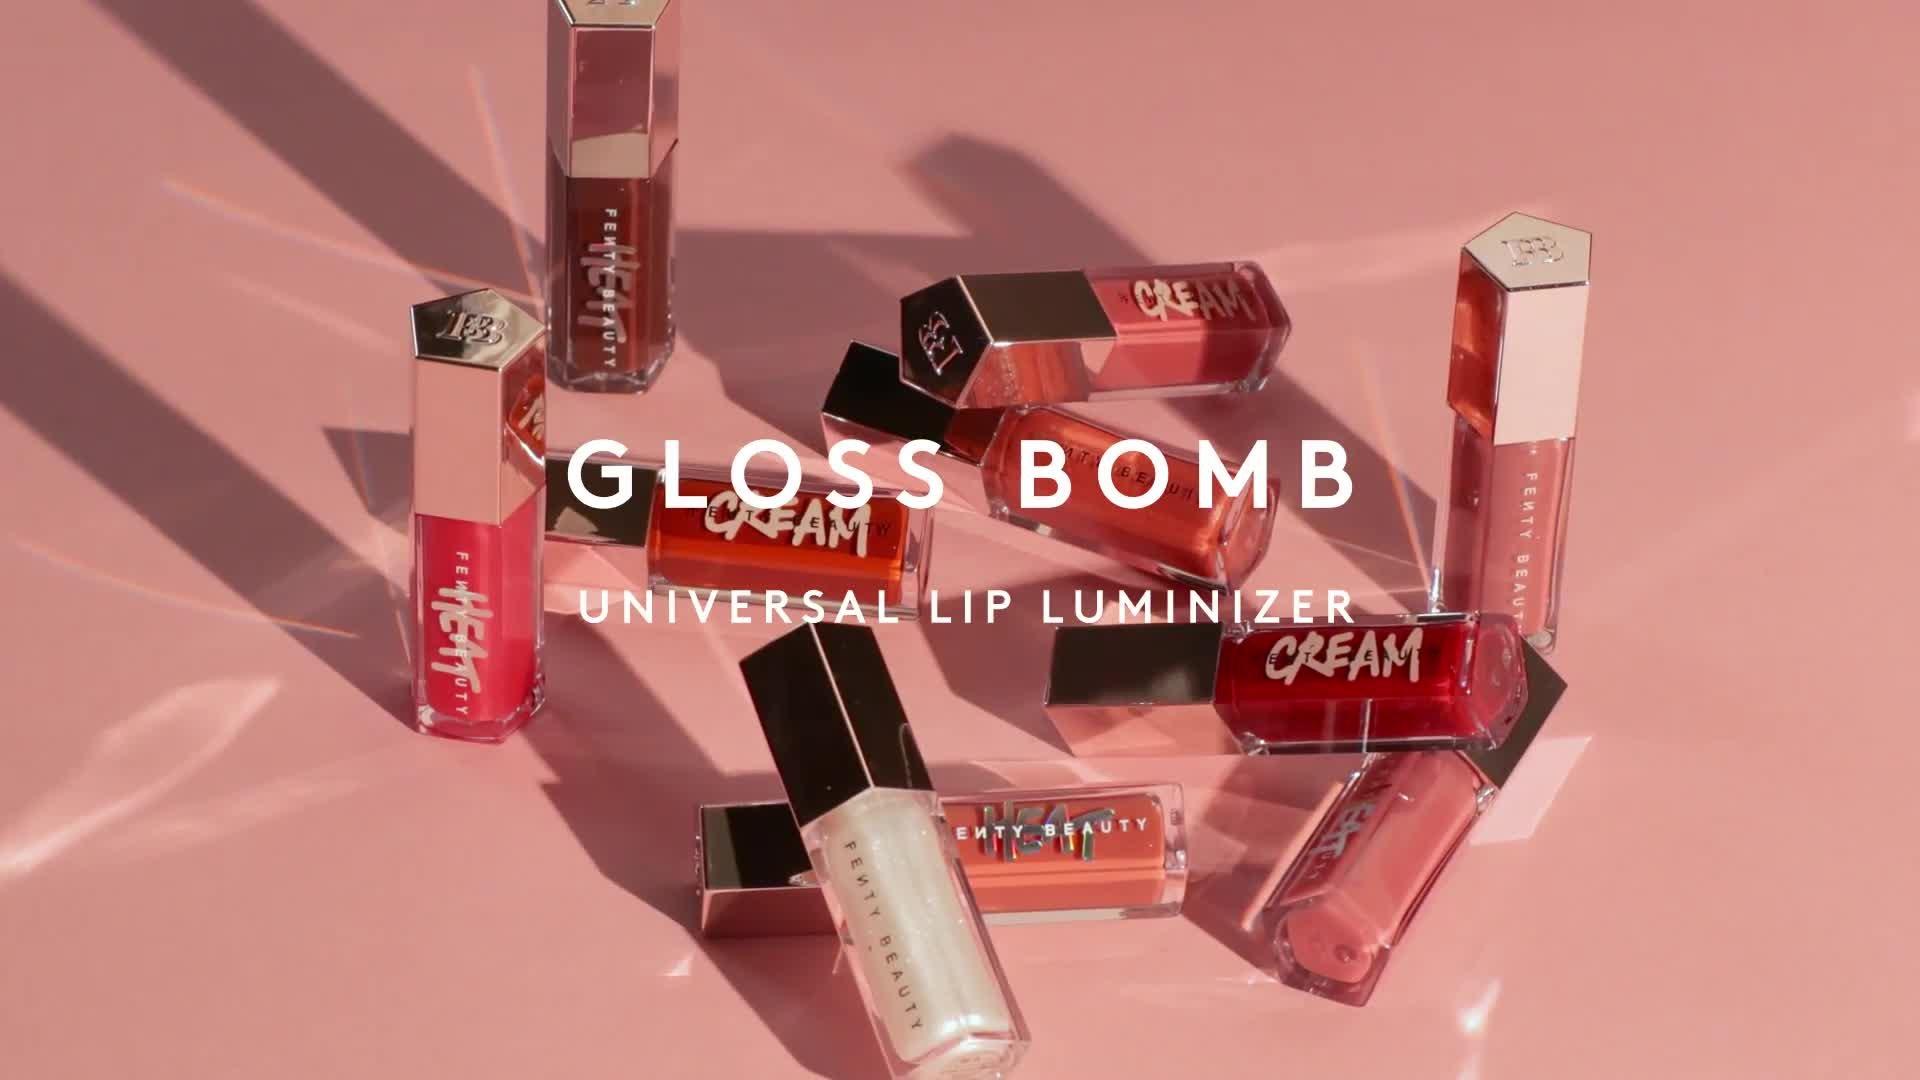  FENTY BEAUTY BY RIHANNA Gloss Bomb Universal Lip